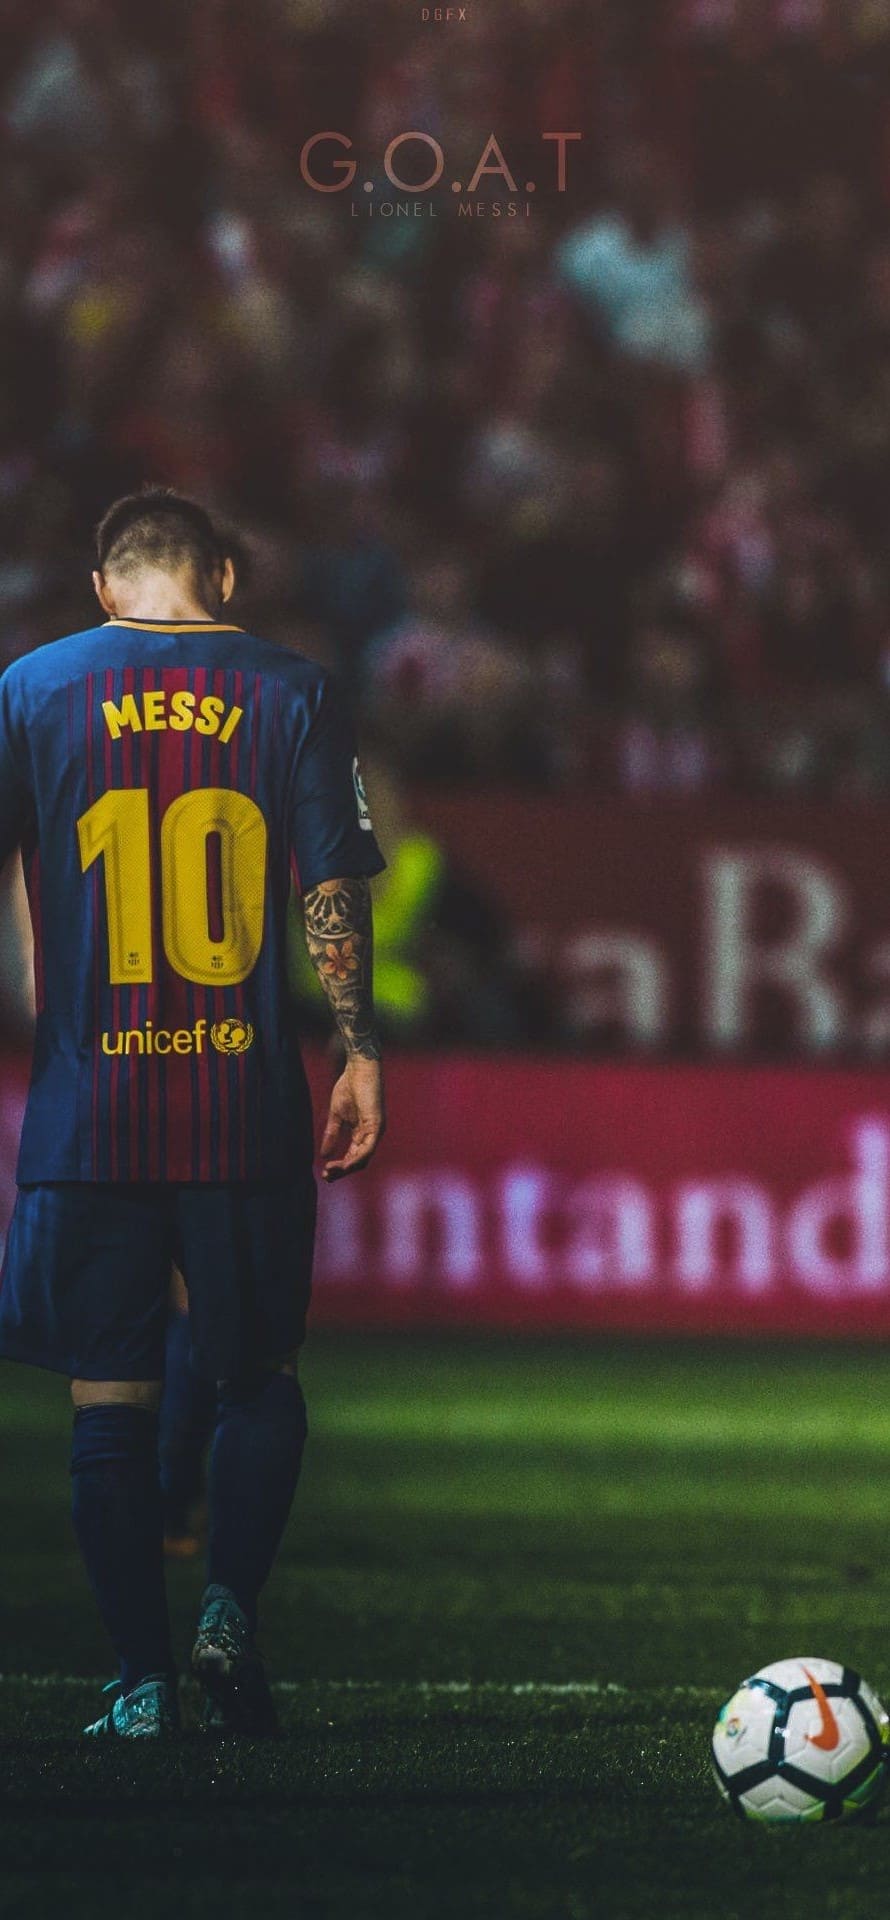 Siêu sao Lionel Messi không chỉ nổi tiếng trên sân cỏ mà còn được yêu thích bởi những bức ảnh cực chất trên điện thoại. Hãy tải ngay những \